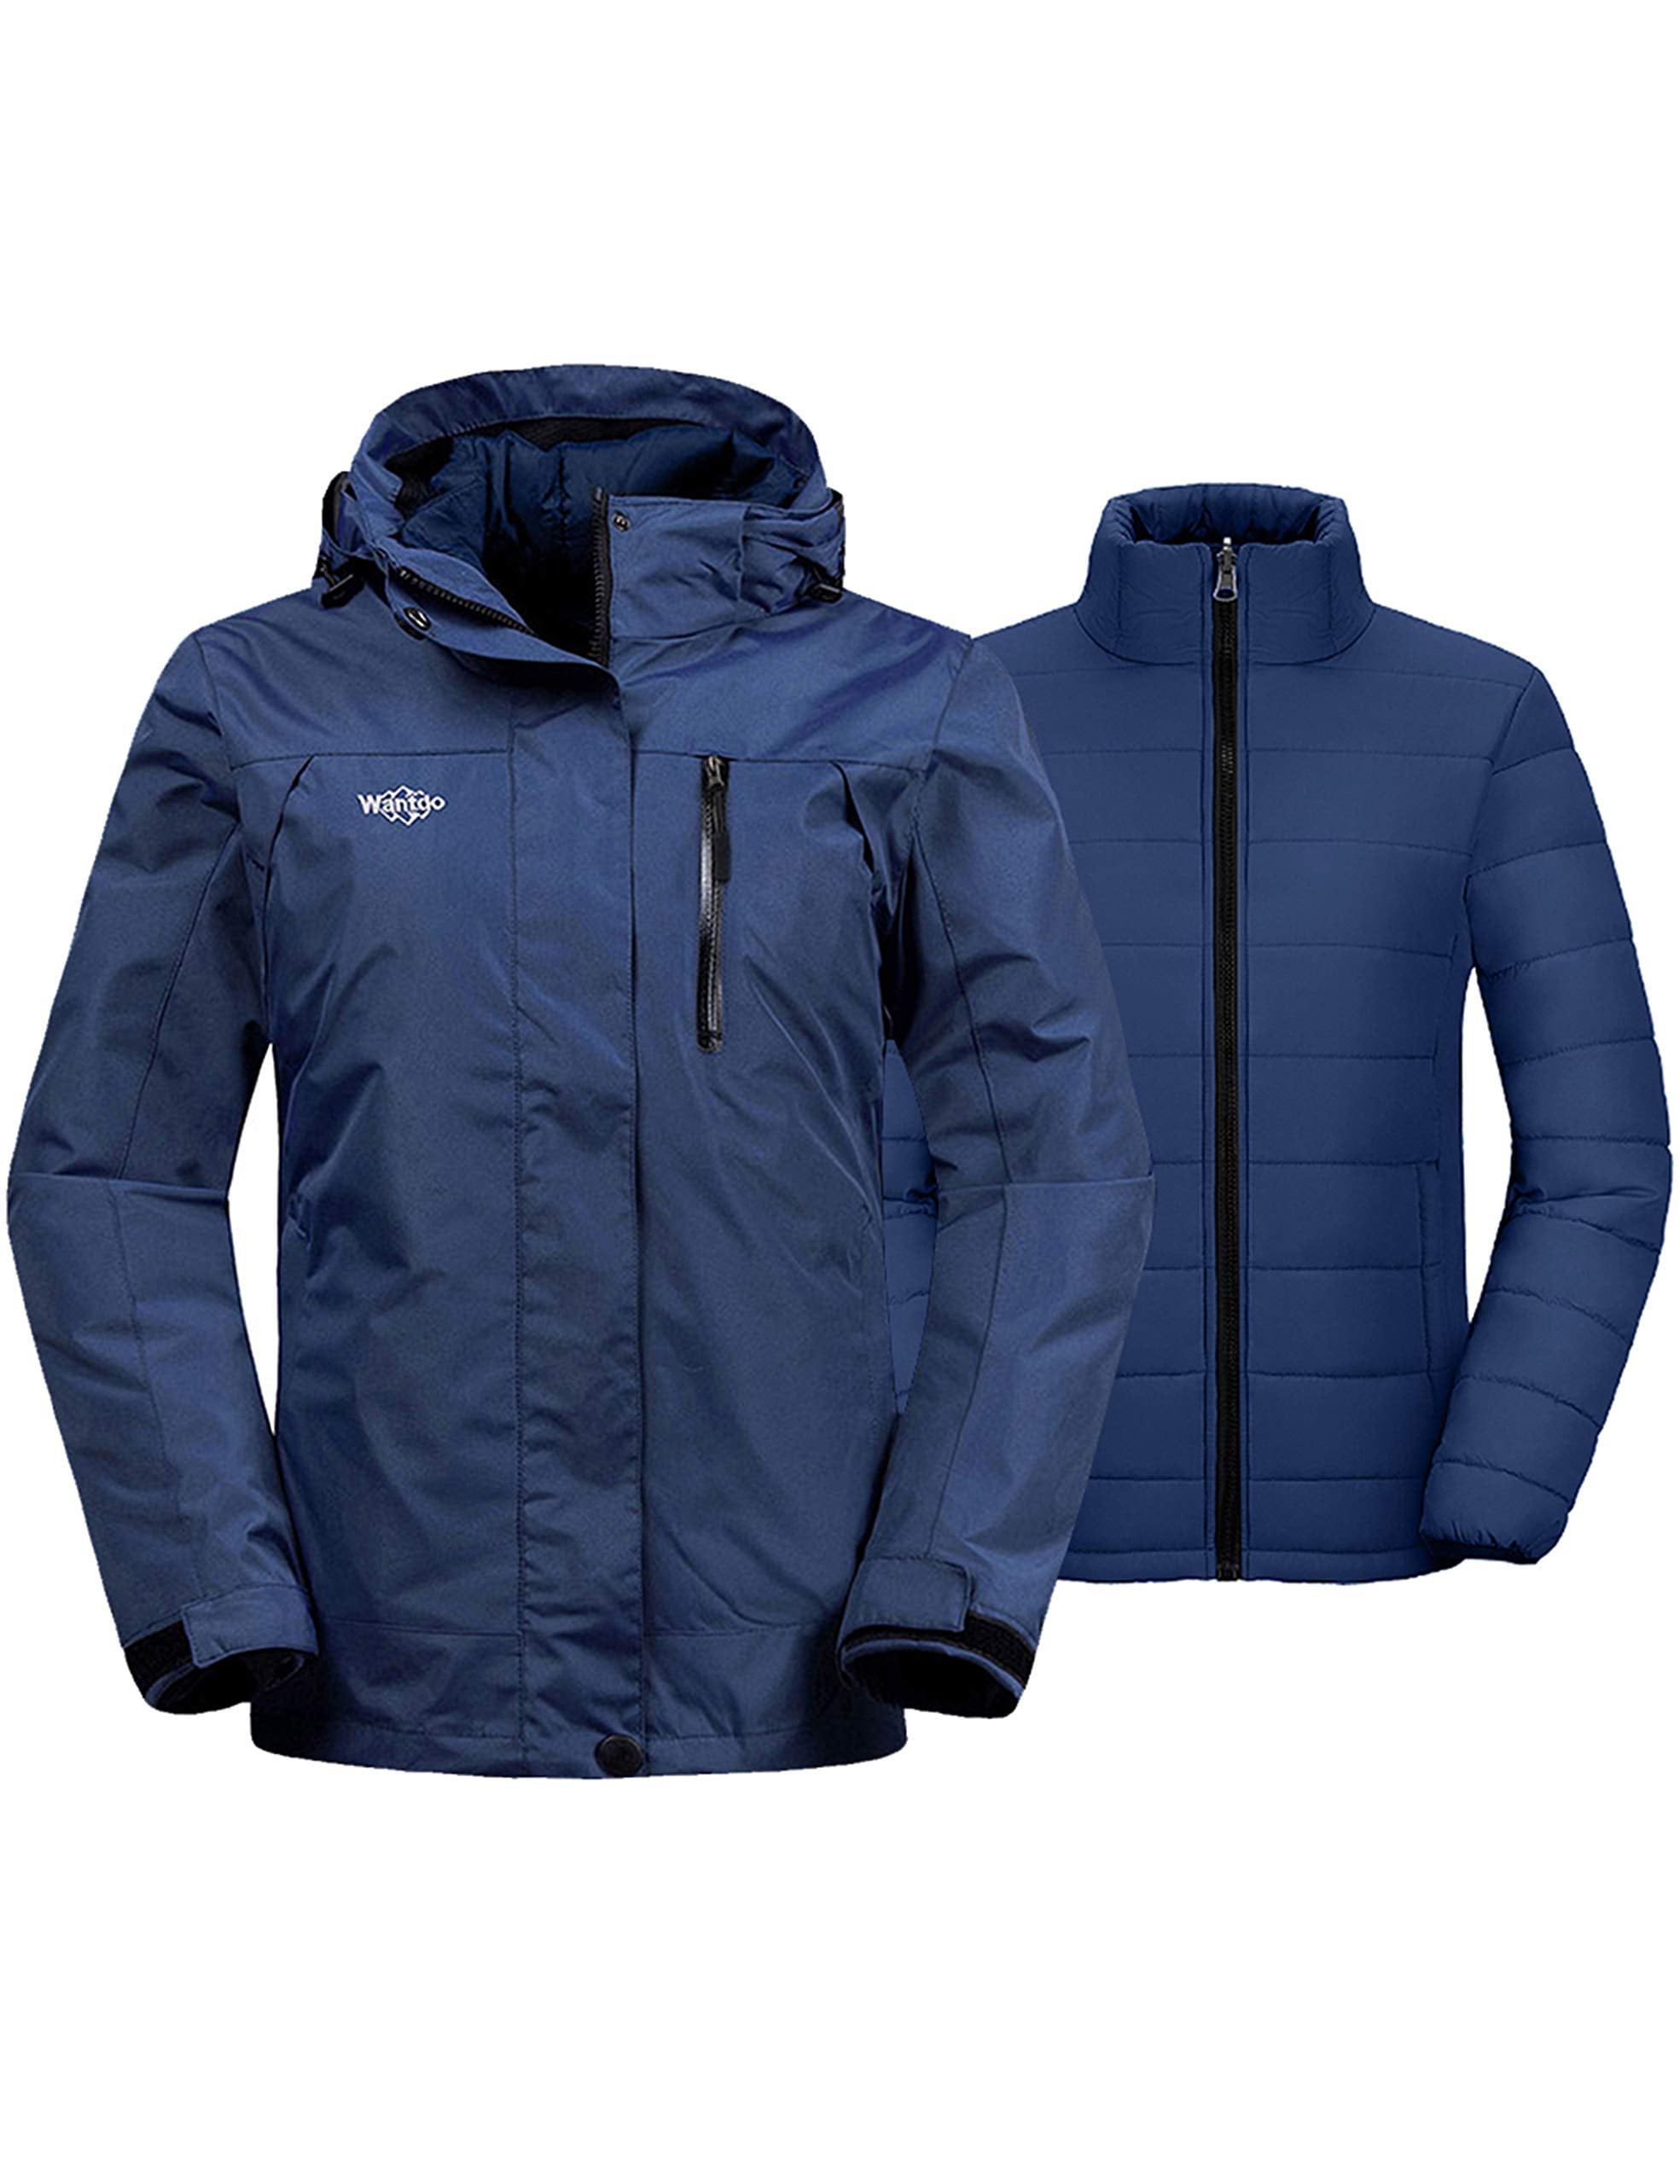 Wantdo Boys Mountain Ski Jacket Warm Winter Coat with Fleece Hooded Waterproof Windbreaker Windproof Snowboarding Jacket 